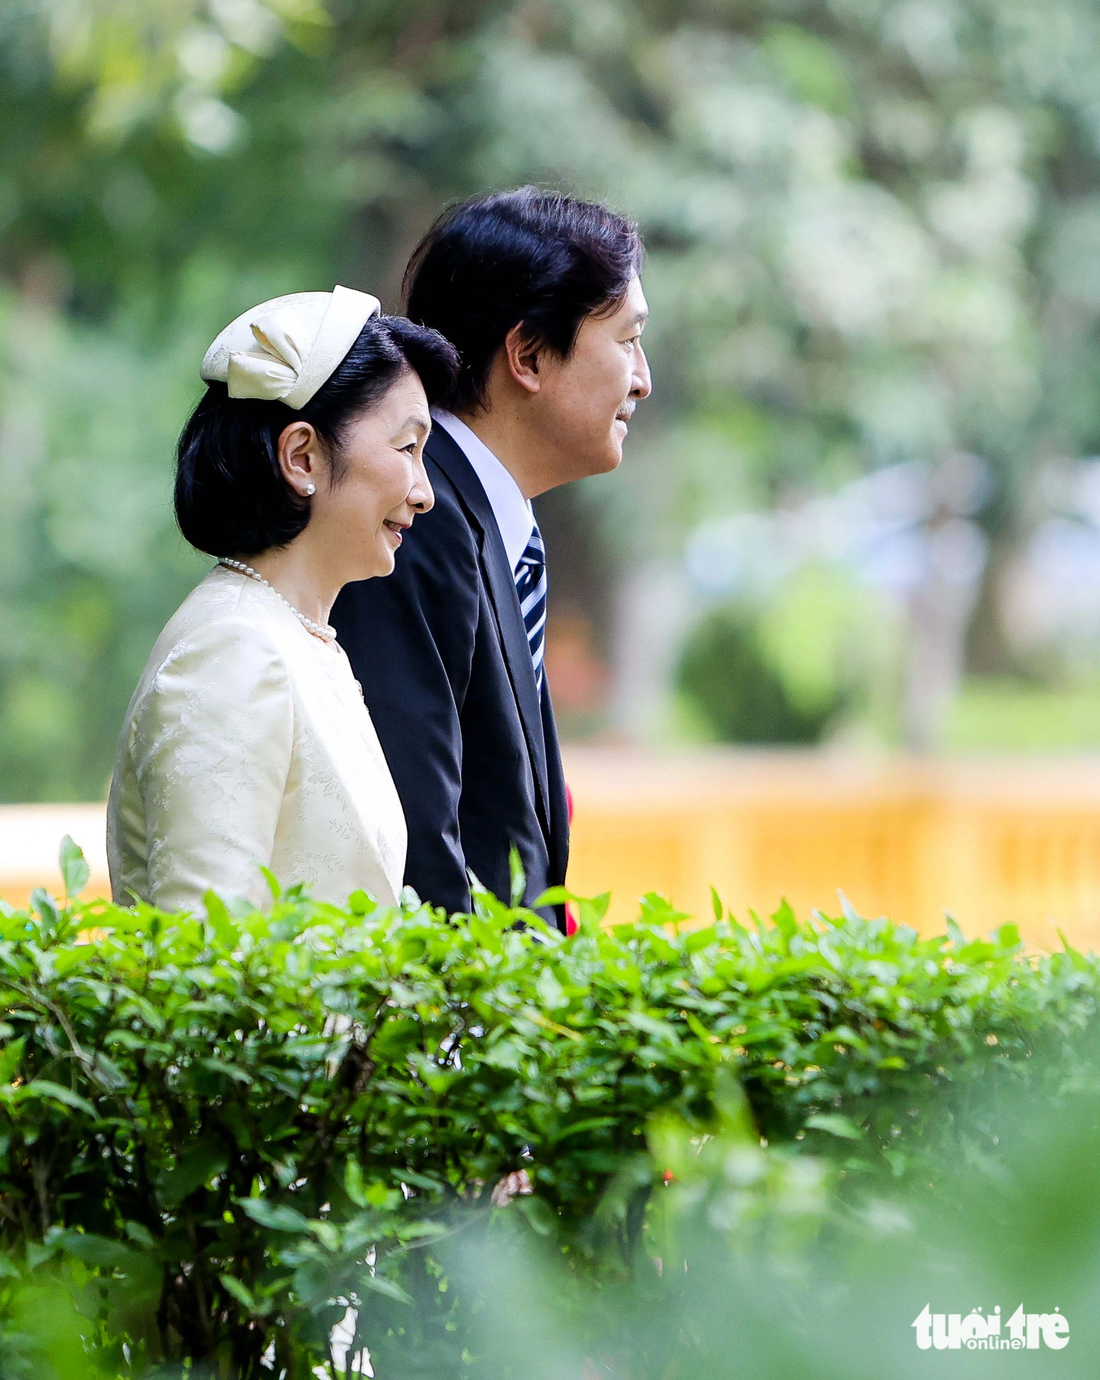 Hoàng thái tử Fumihito Akishino là con trai thứ hai của Thượng hoàng Akihito và là em trai của Nhà vua Naruhito. Ông hiện là người đứng thứ nhất trong danh sách kế vị của Hoàng gia Nhật Bản. Đây là lần thứ 3 Hoàng thái tử tới Việt Nam và là lần trở lại thứ 2 của Công nương Kiko. Trong ảnh: Hoàng thái tử Fumihito Akishino và Công nương Kiko đang đi qua hàng rào cây râm bụt dẫn lối vào Nhà sàn Bác Hồ - Ảnh: NGUYỄN KHÁNH